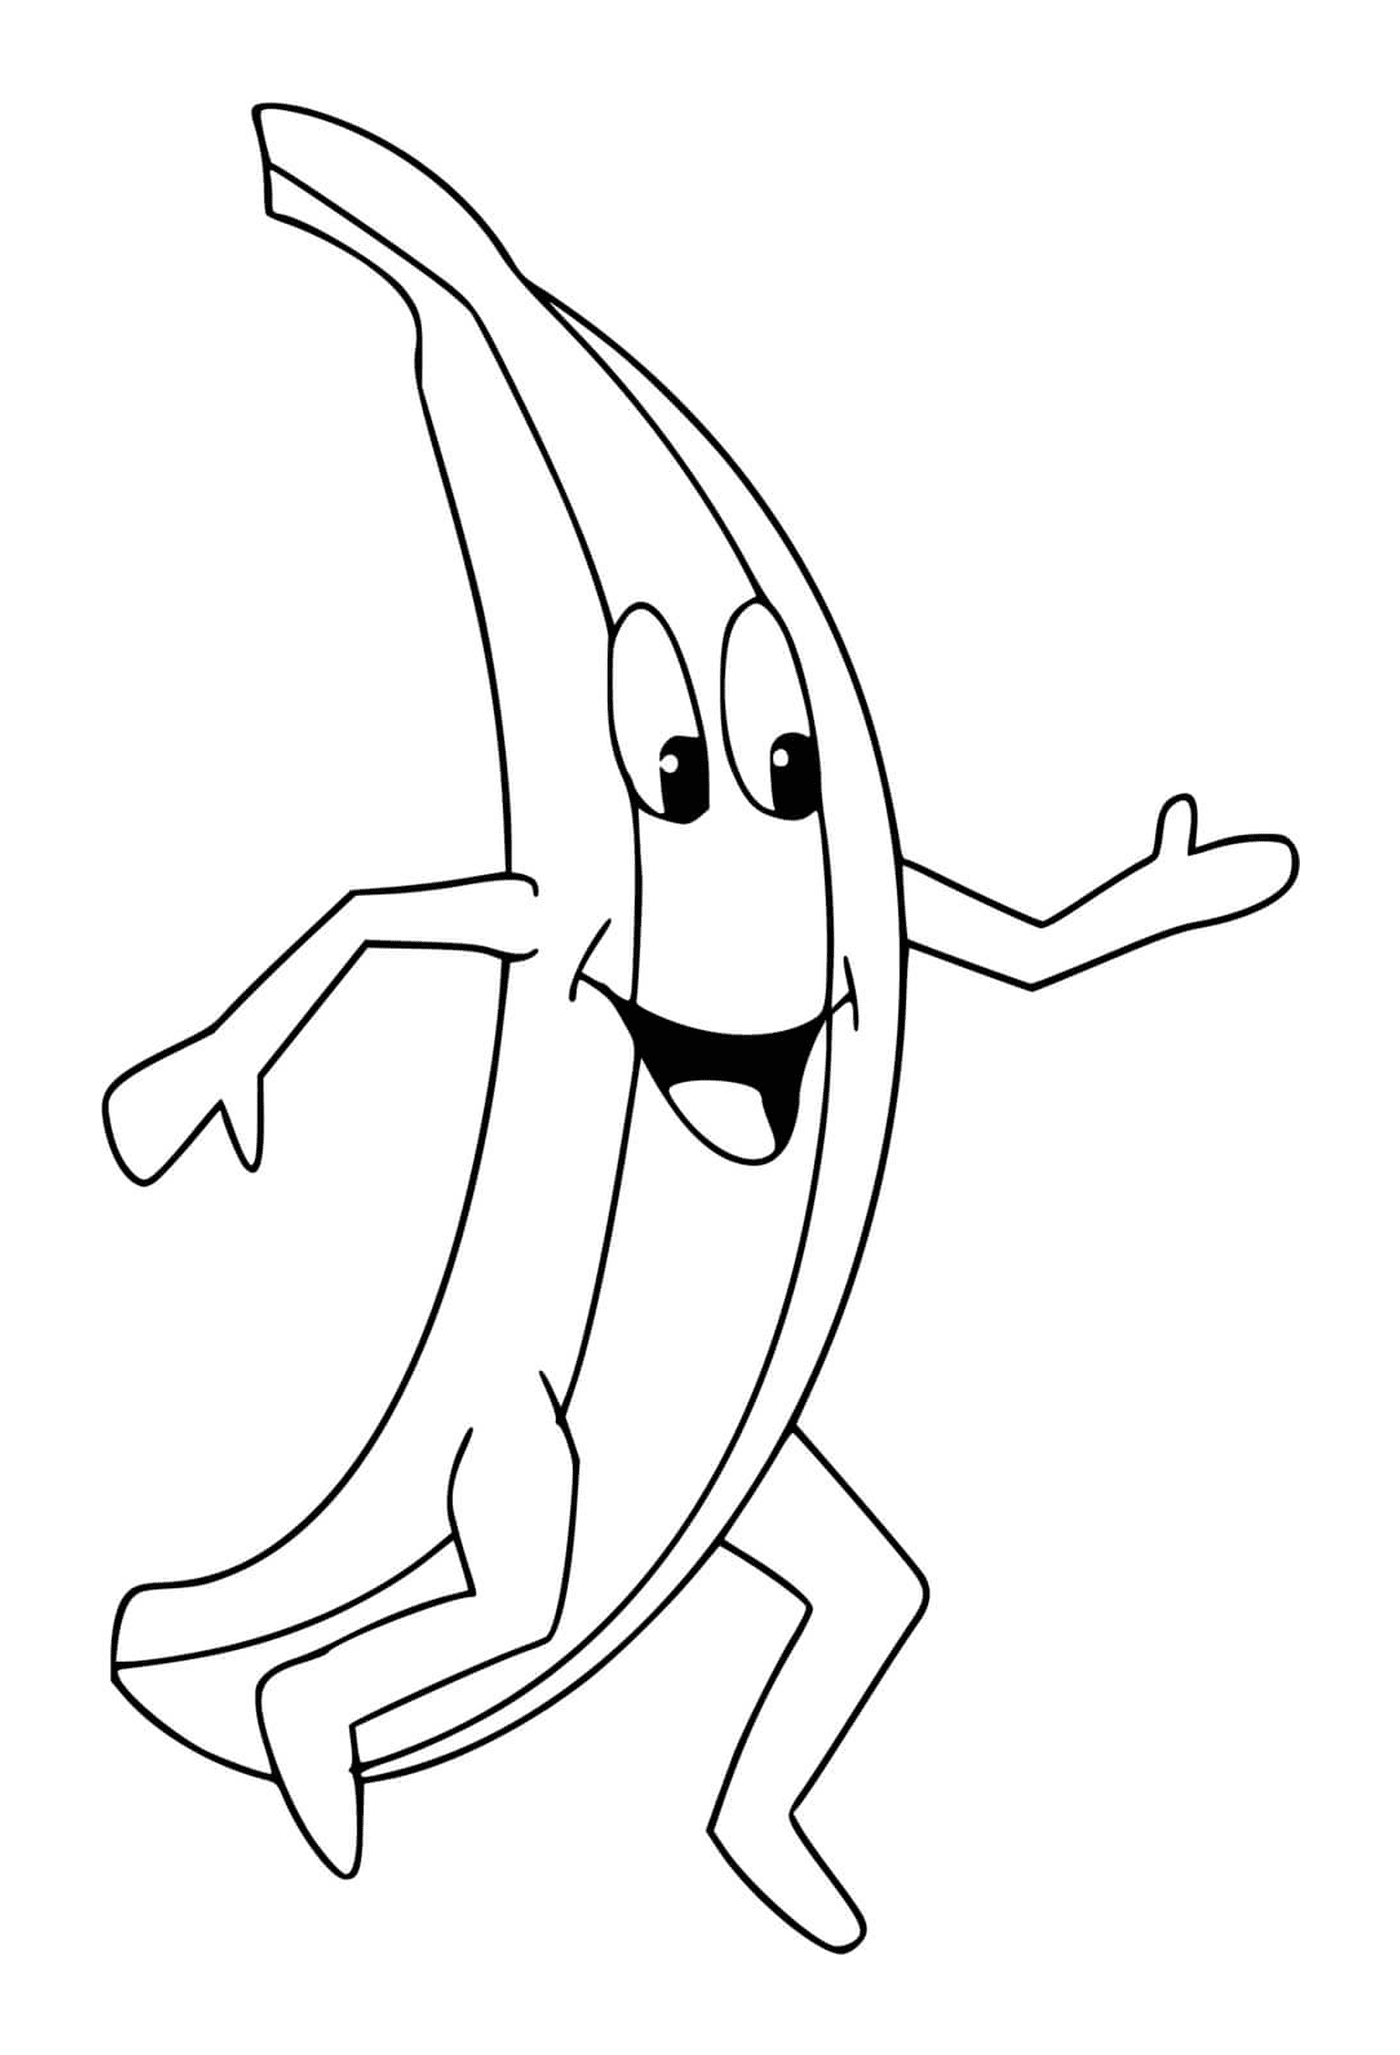  Un plátano 